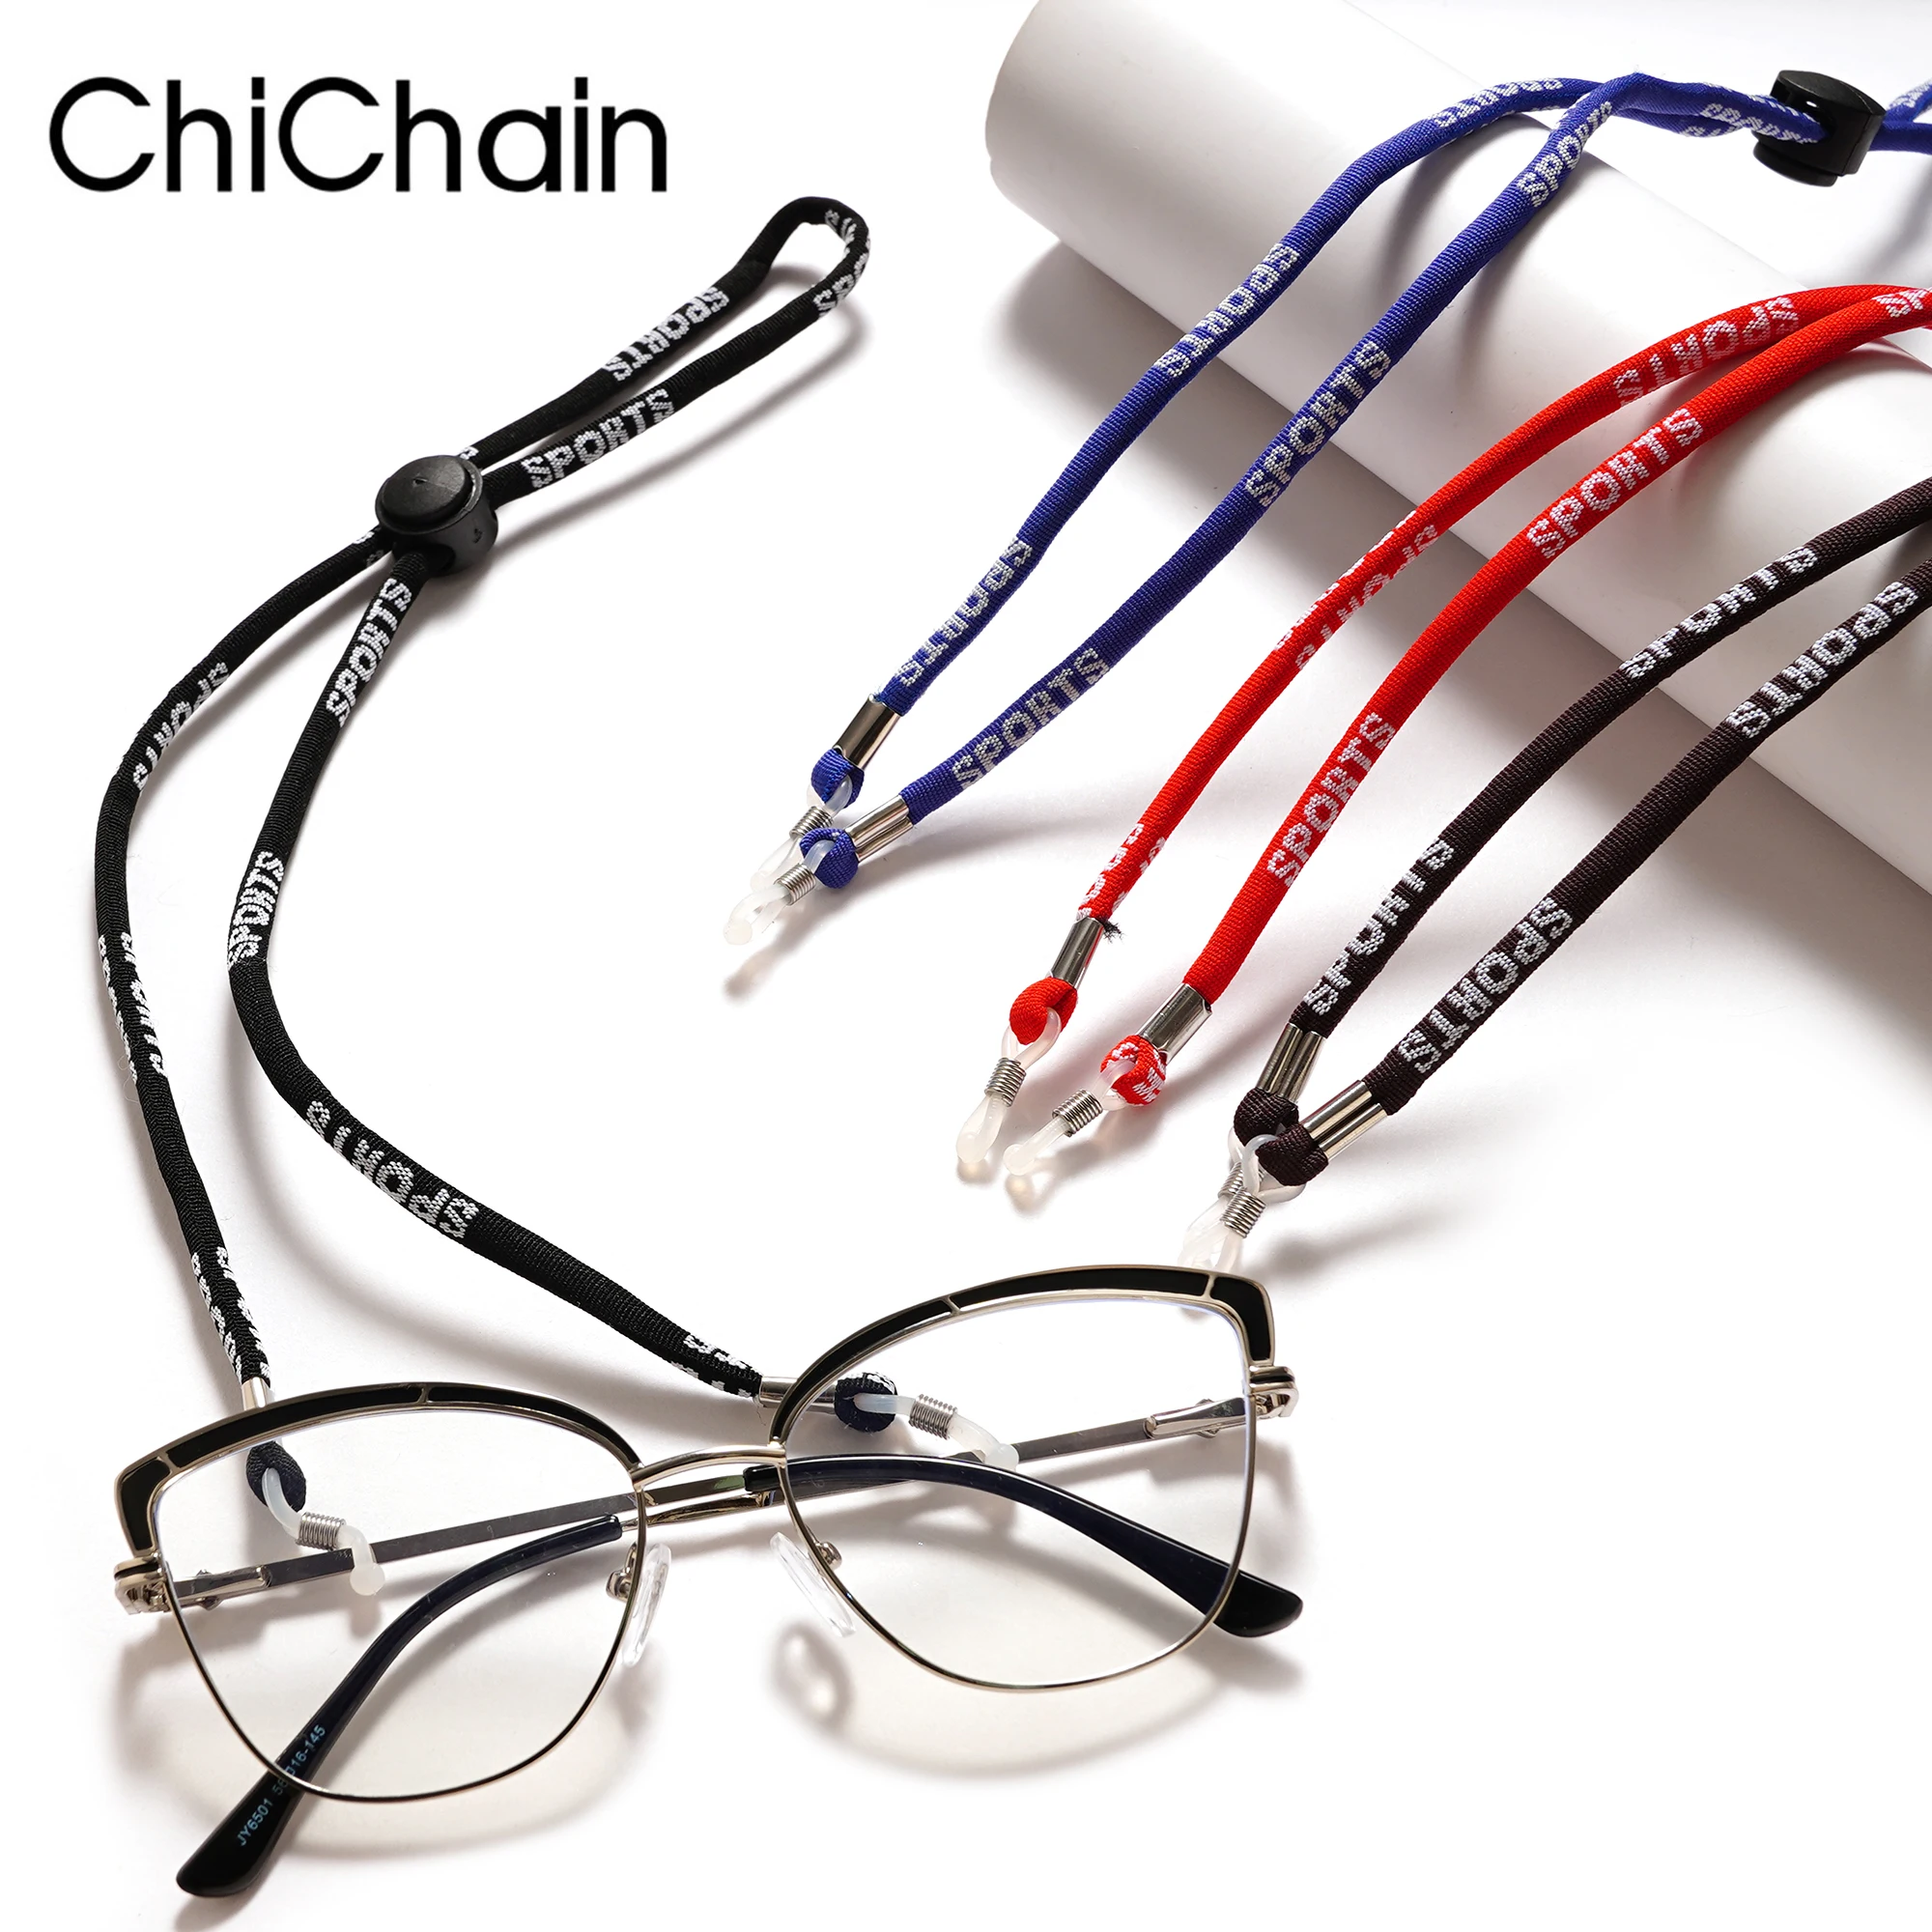 Cordon de lunettes ajustable Porte-lunettes Chaîne Corde Chaîne Anti Slip Neck Strap 